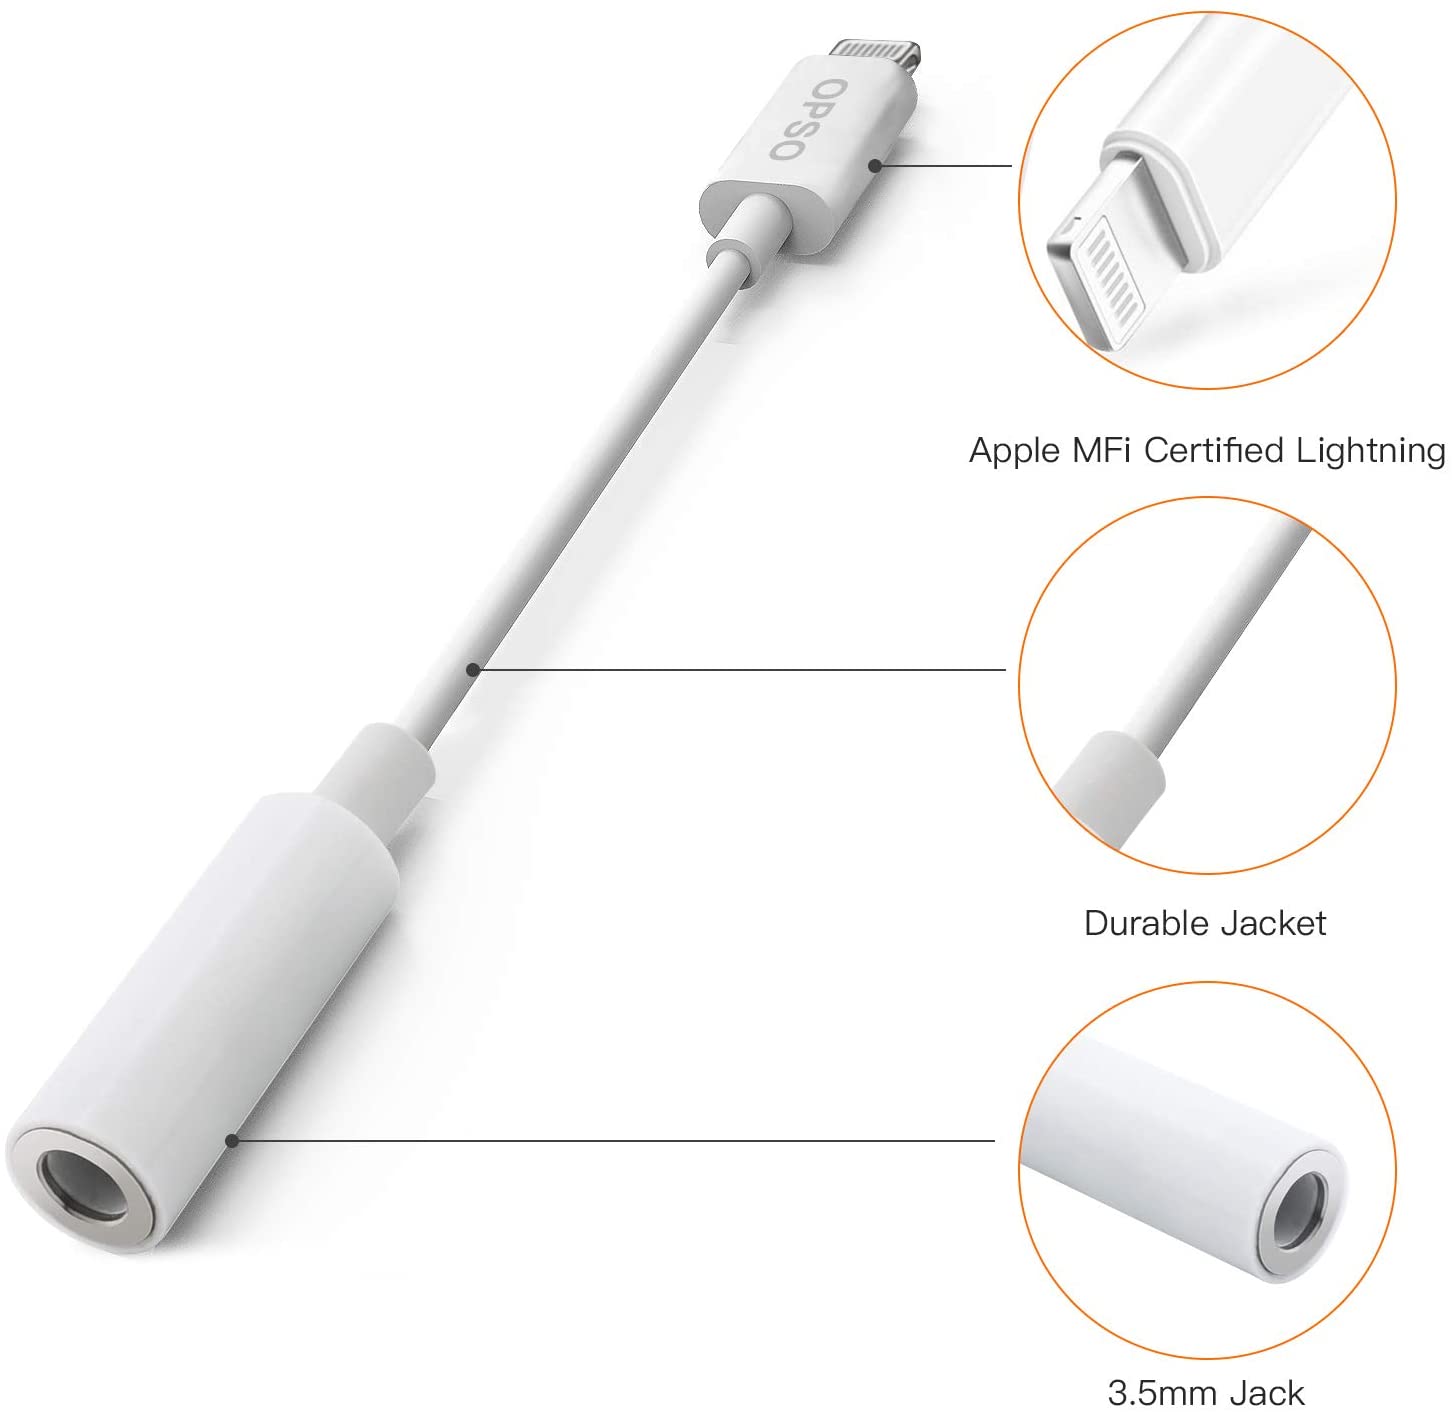 Adaptateur MFi Lightning prise Jack 3,5 mm pour appareils Apple